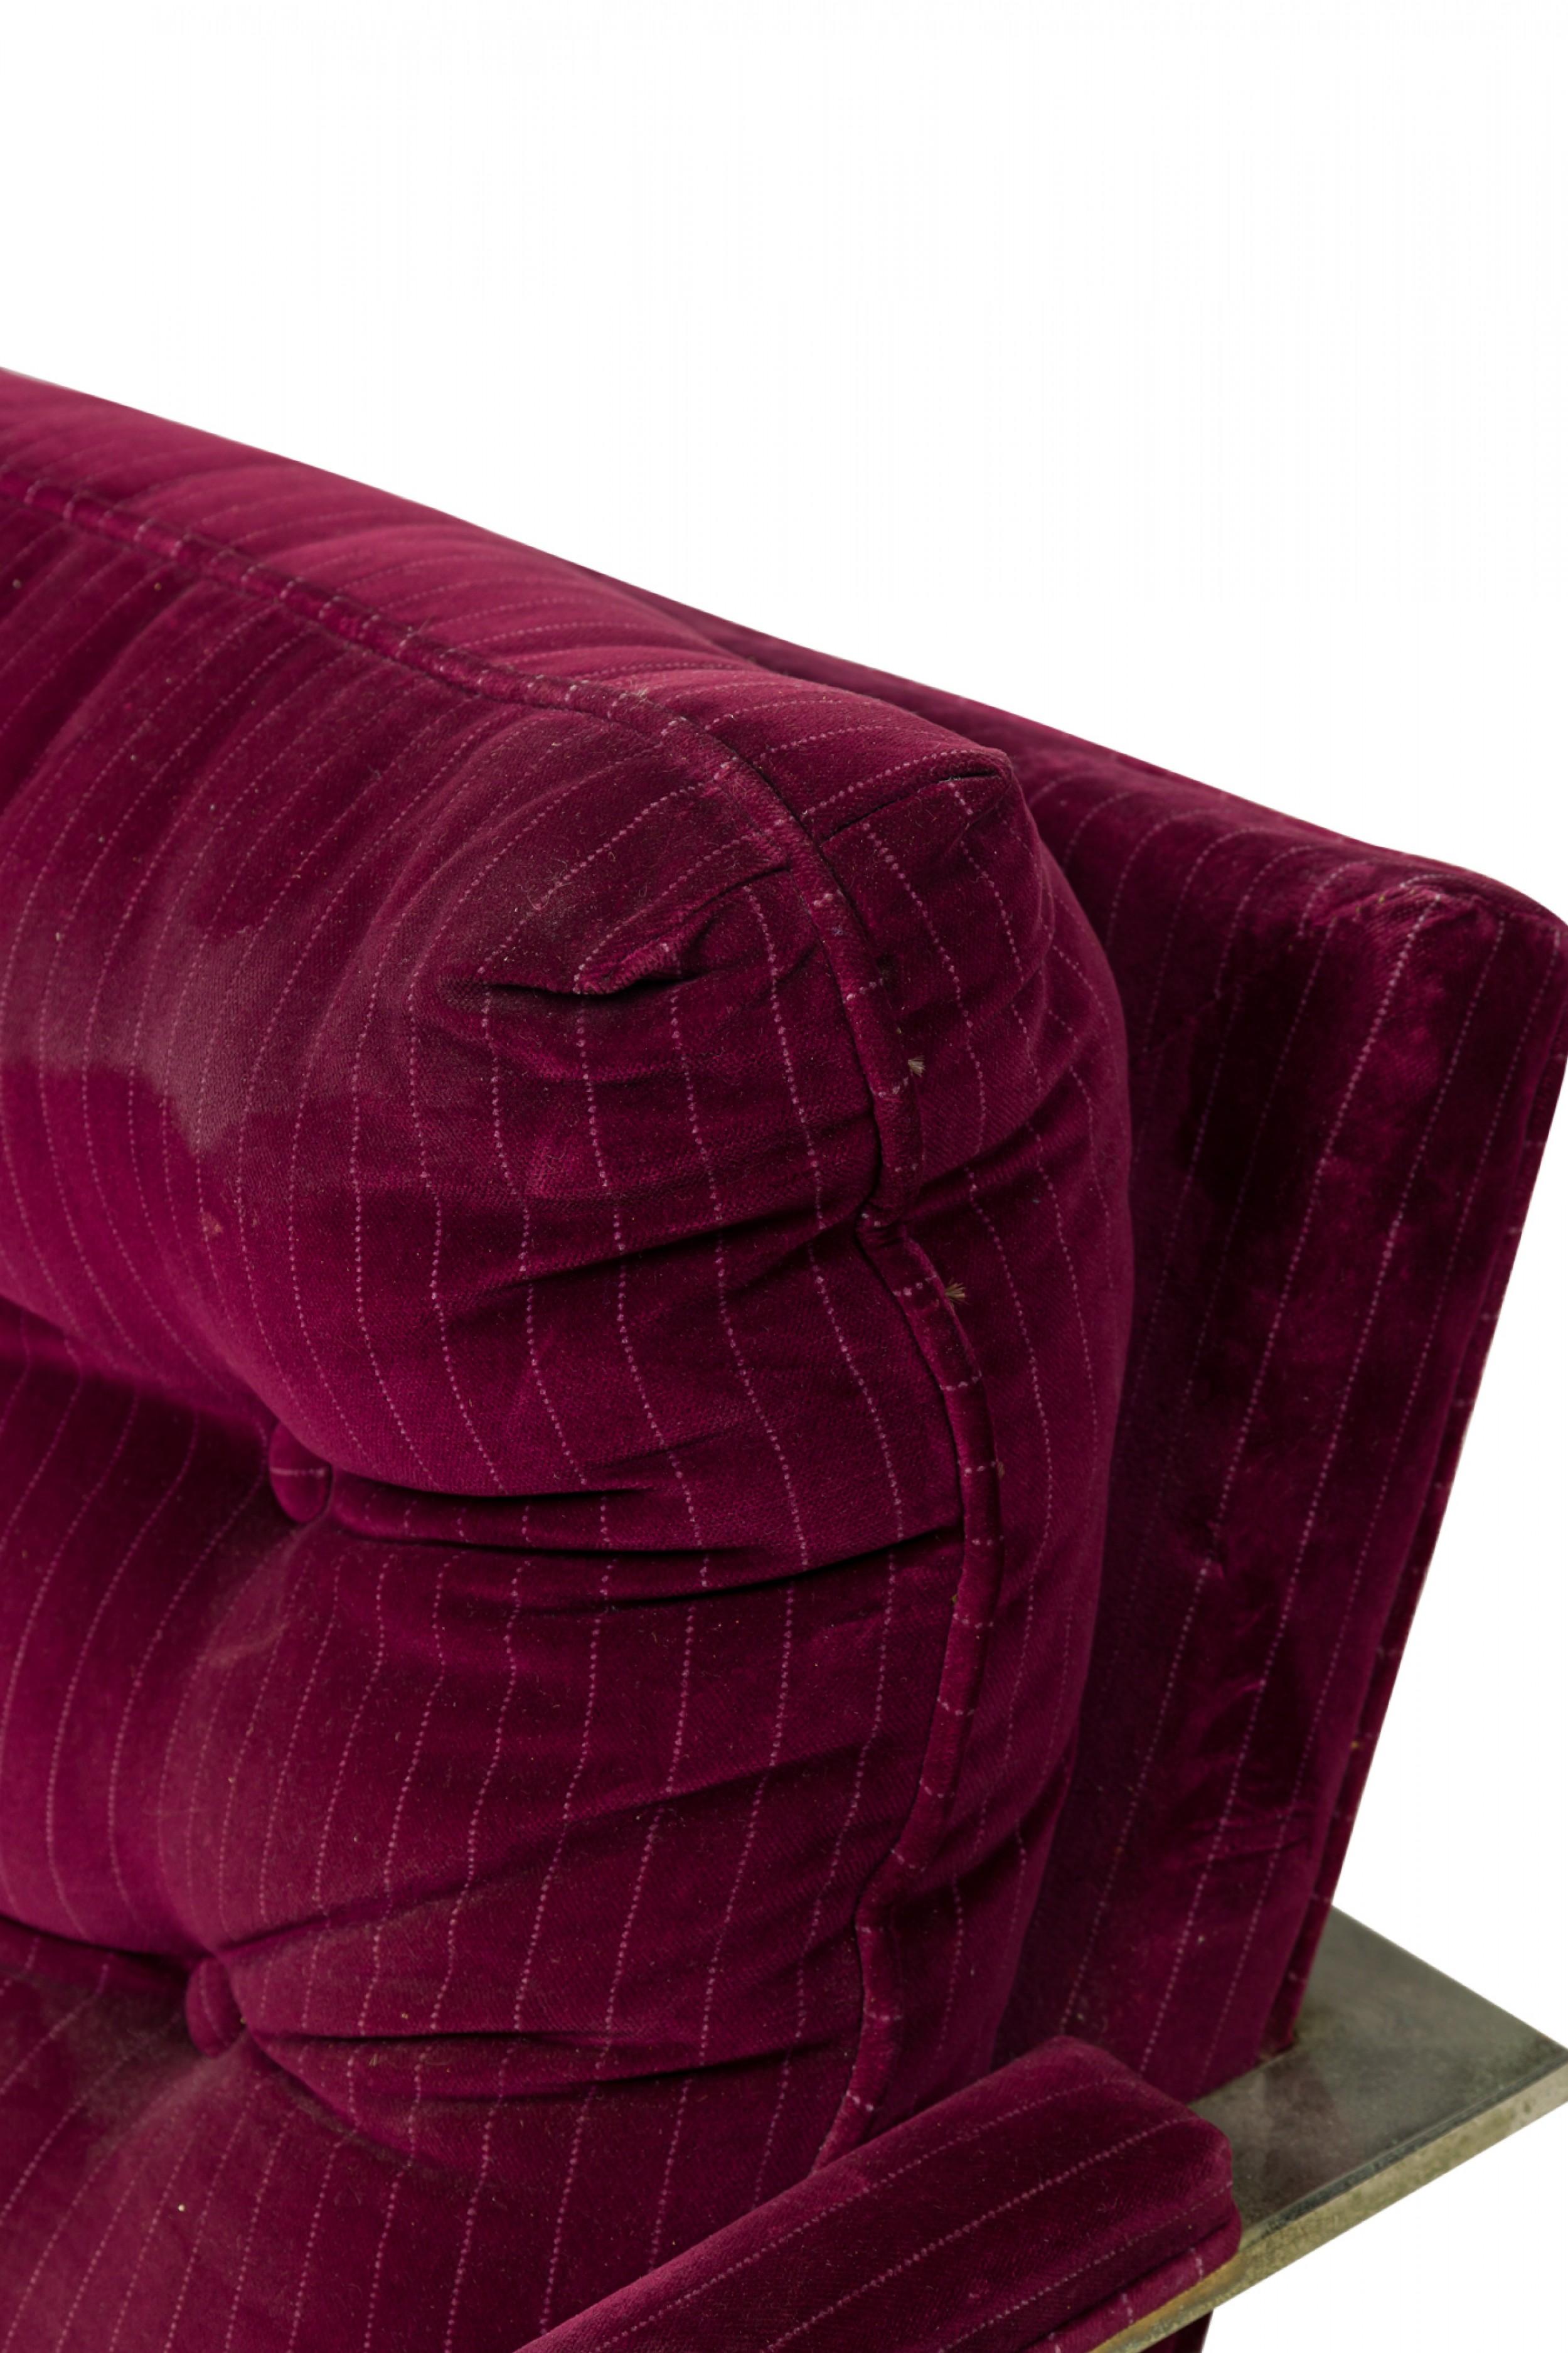 Fauteuil de salon américain du milieu du siècle, avec un châssis plat en chrome poli, tapissé d'un tissu en velours violet framboise à rayures. (Milo BAUGHMAN)(Chaise similaire en tissu beige / taupe : REG5102A)
 

 Usure de la sellerie,